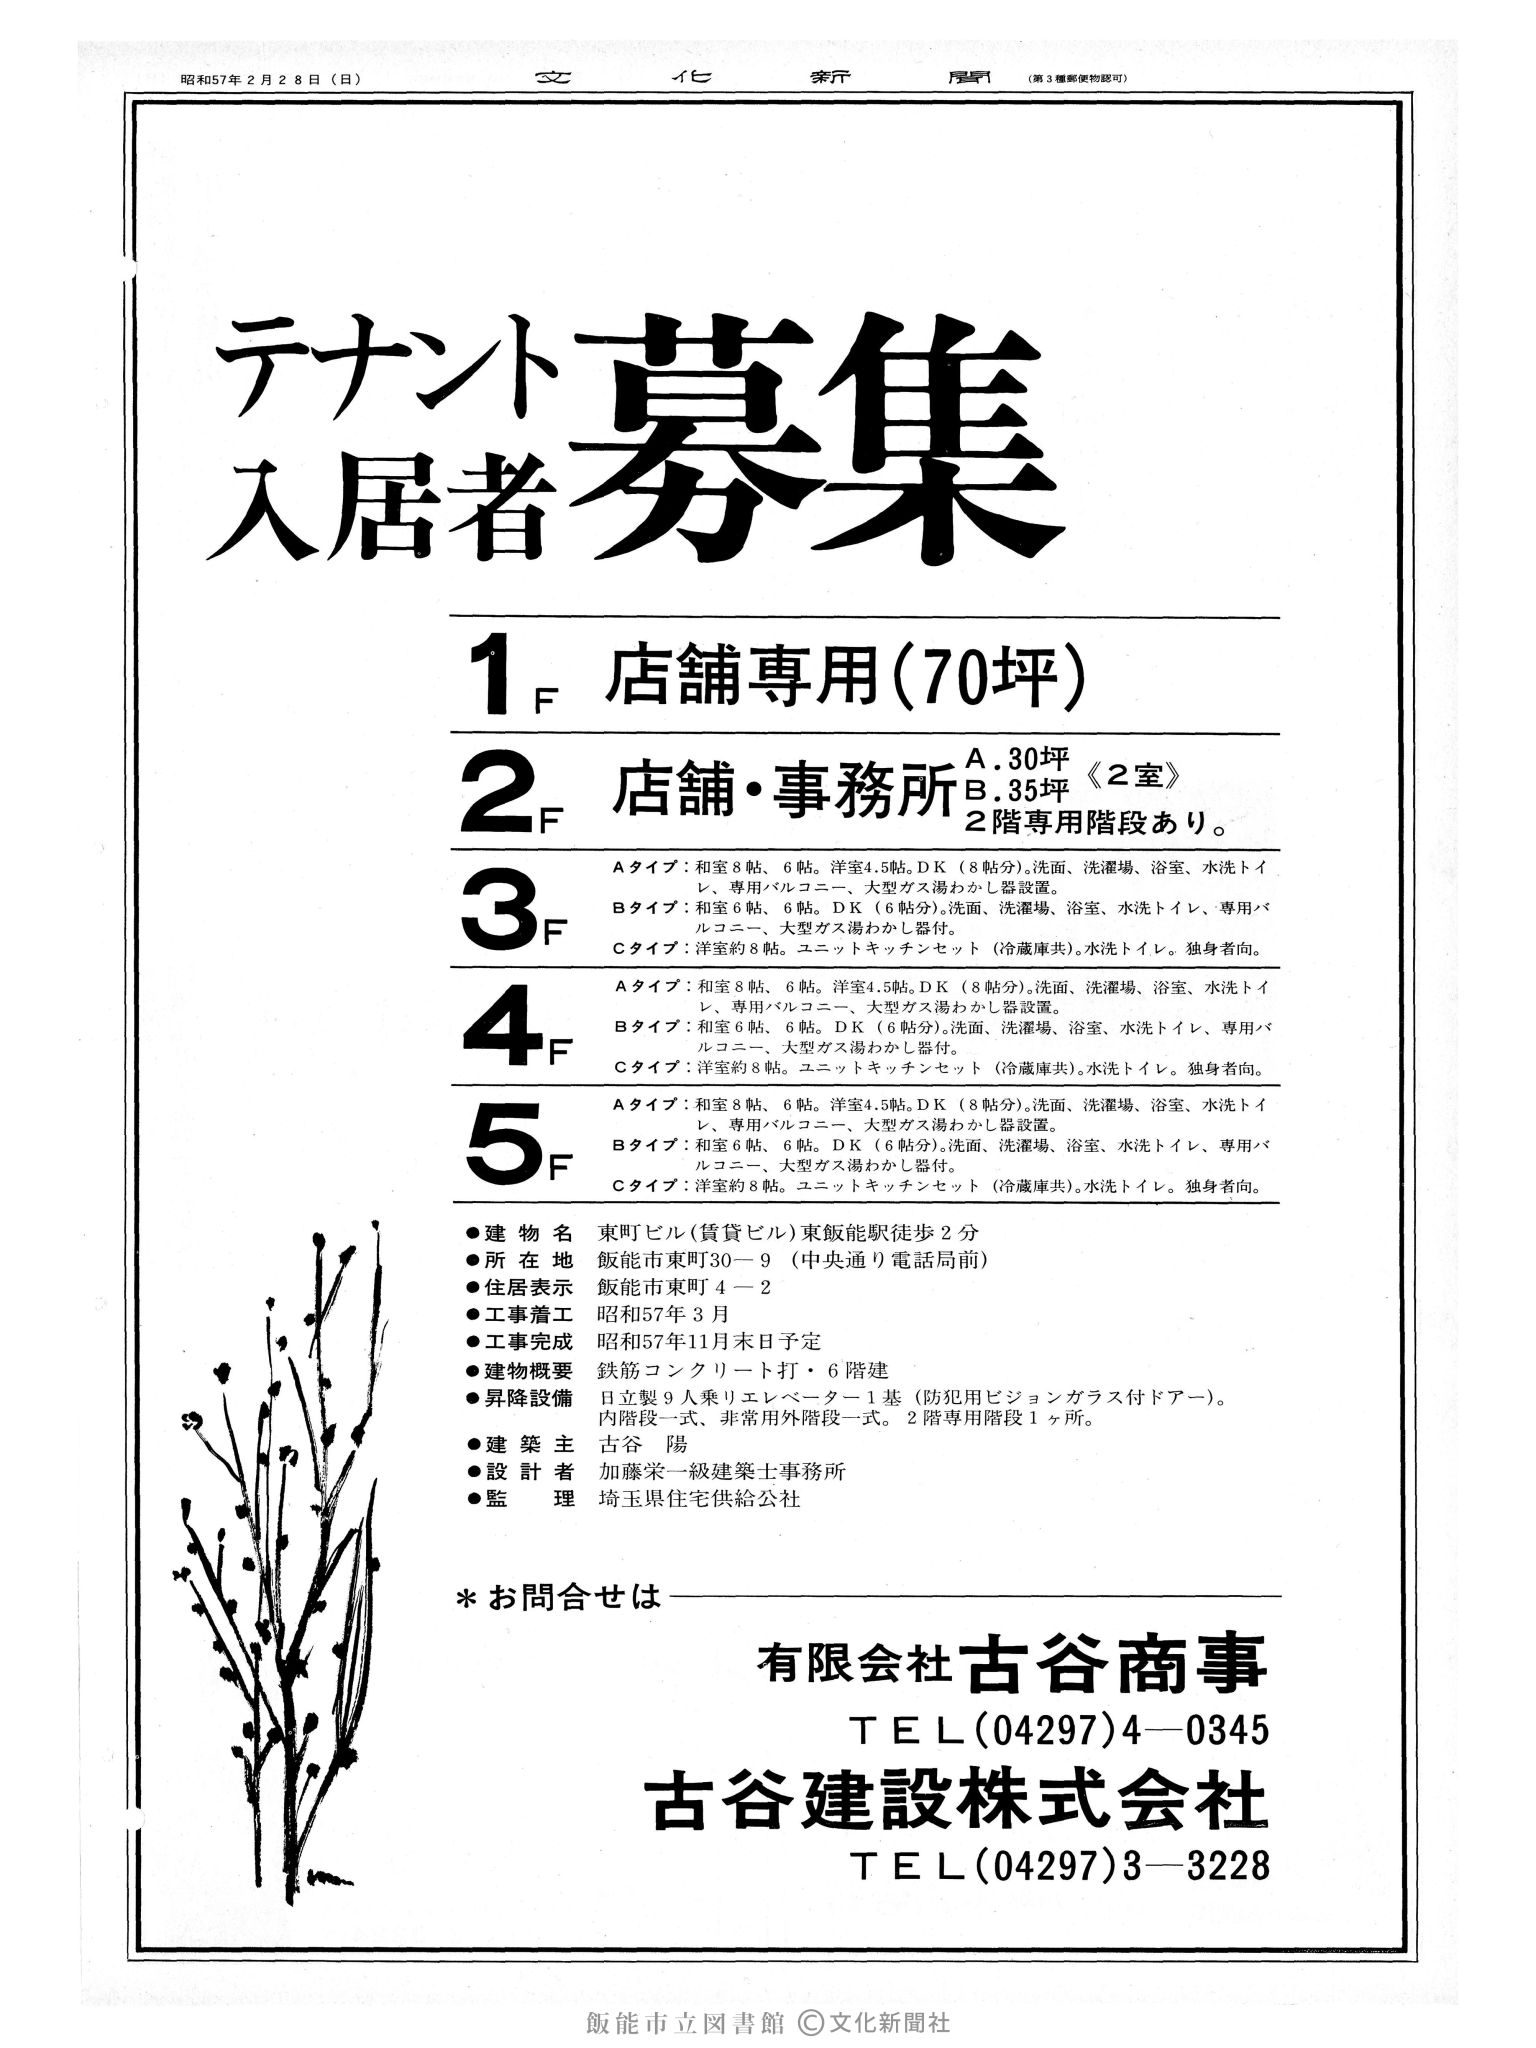 昭和57年2月28日4面 (第10059号) 広告ページ